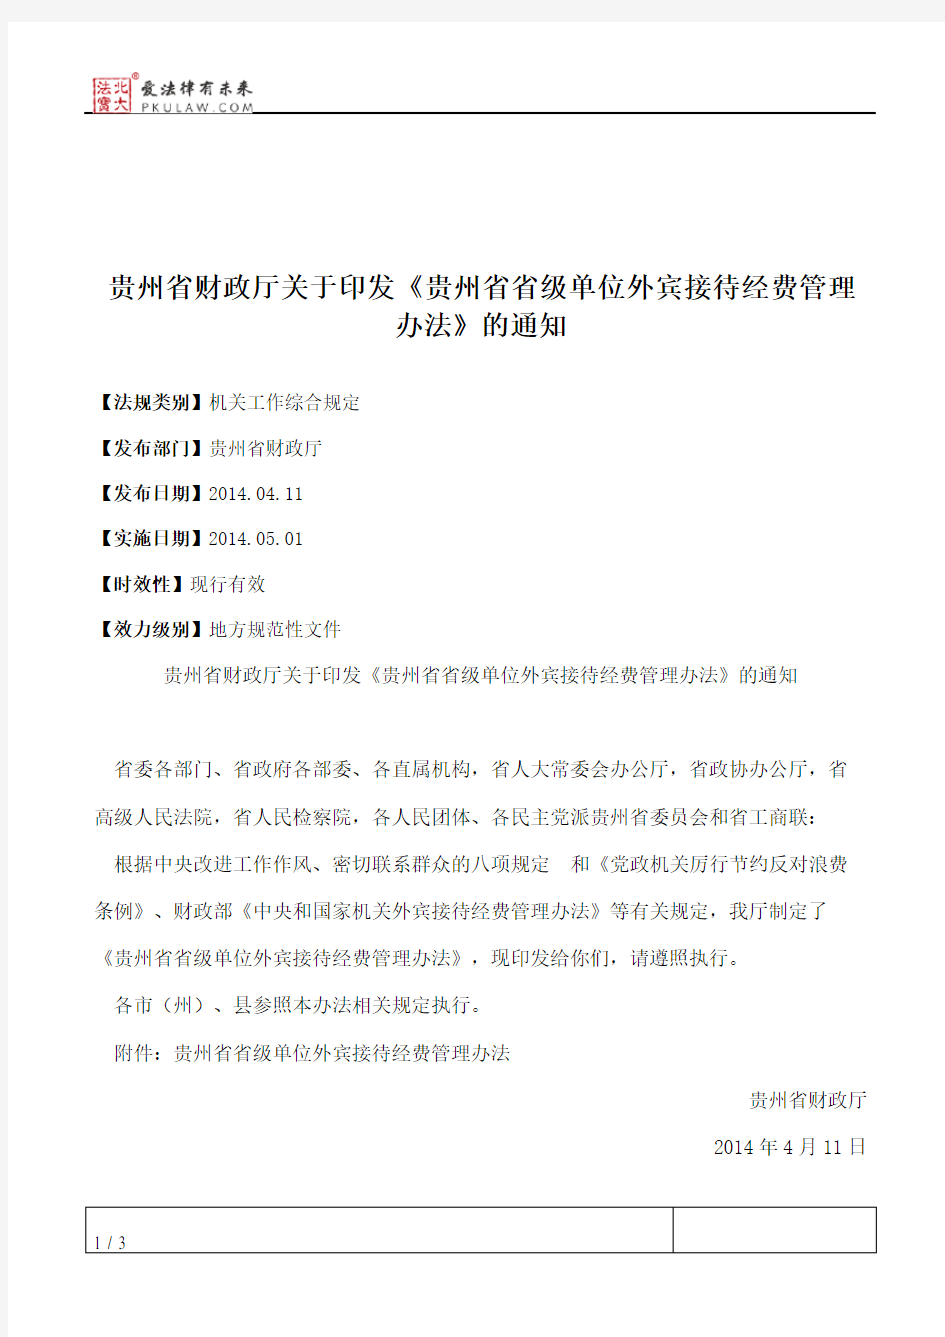 贵州省财政厅关于印发《贵州省省级单位外宾接待经费管理办法》的通知